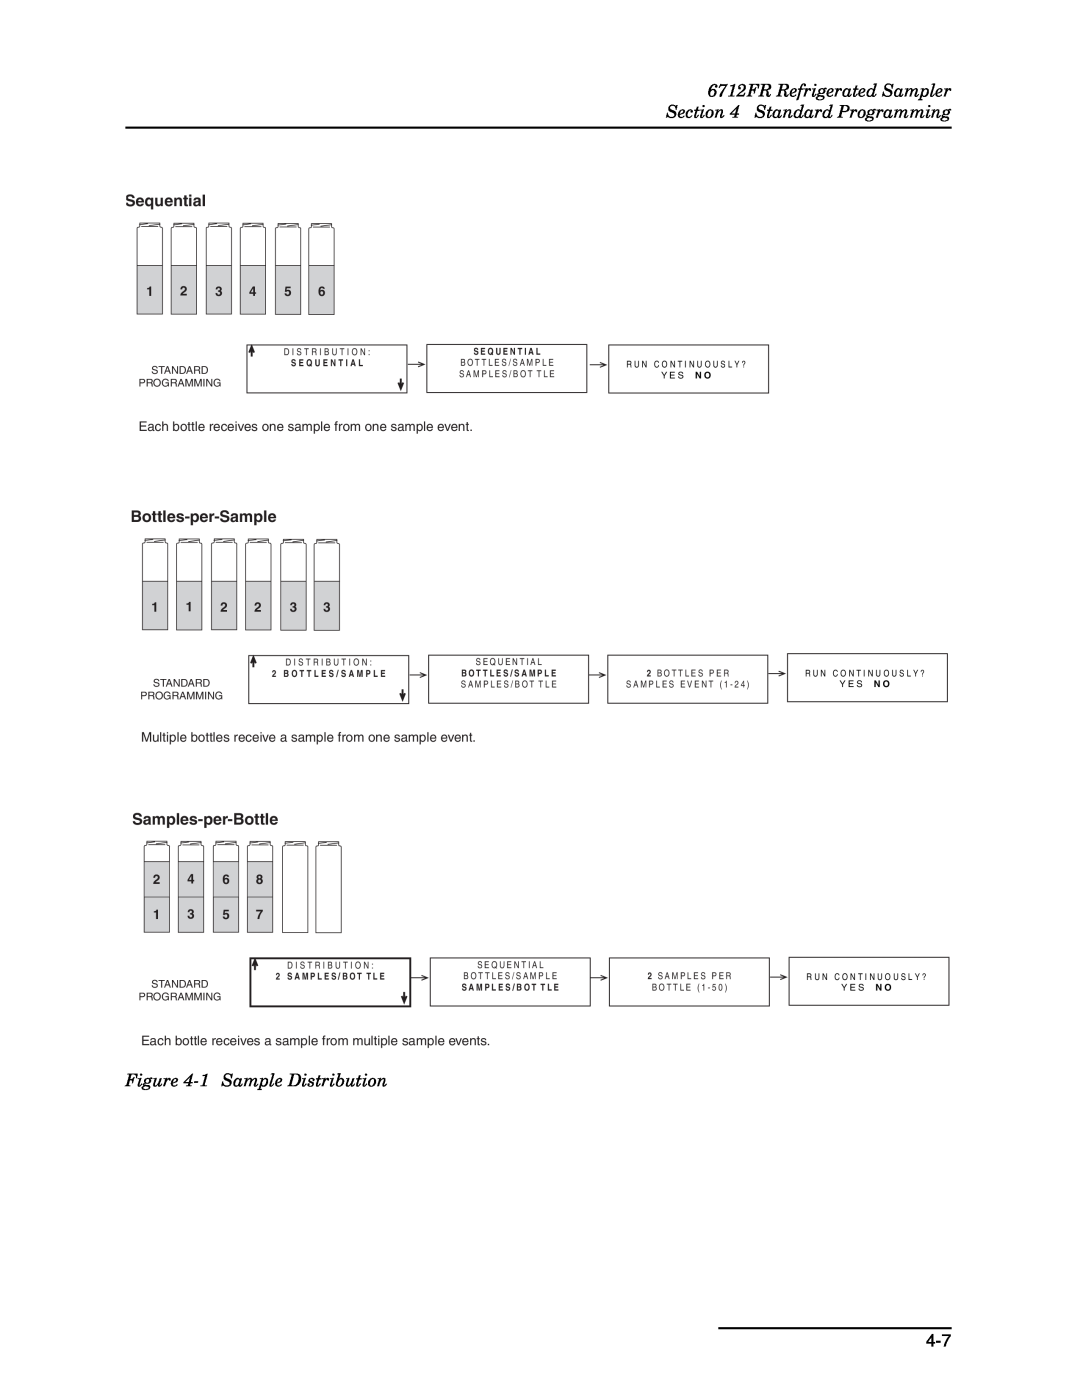 Teledyne manual 6712FR Refrigerated Sampler Standard Programming, 1 Sample Distribution, Sequential, Bottles-per-Sample 